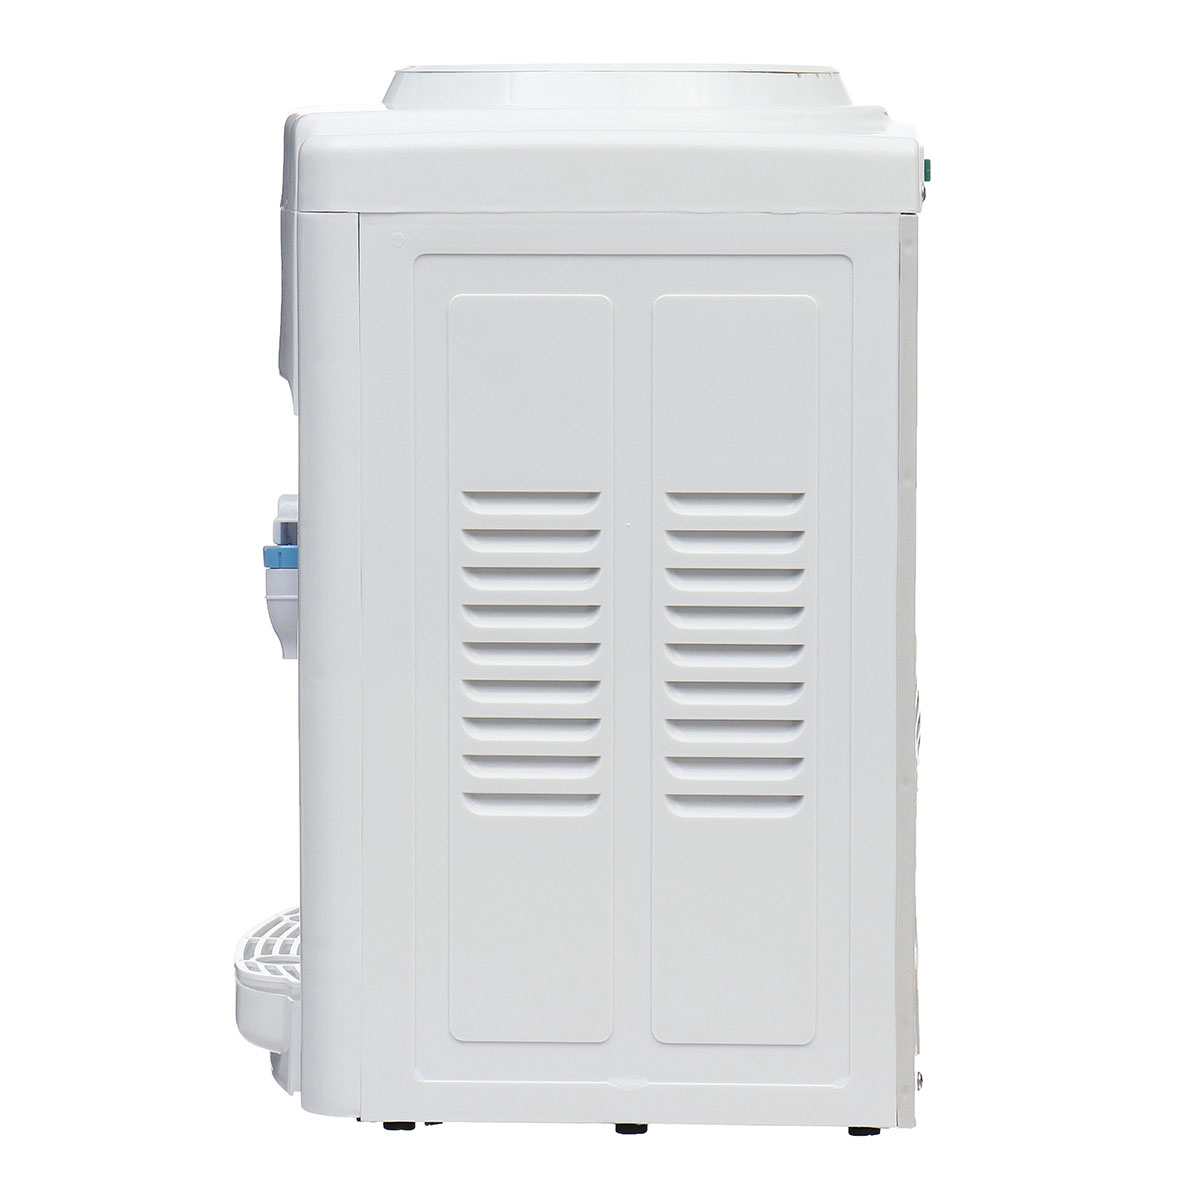 220V-Electric-Cold-Hot-Water-Beverage-Cooler-Dispenser-3-5-Gallon-Home-Office-Use-Desktop-1617196-3